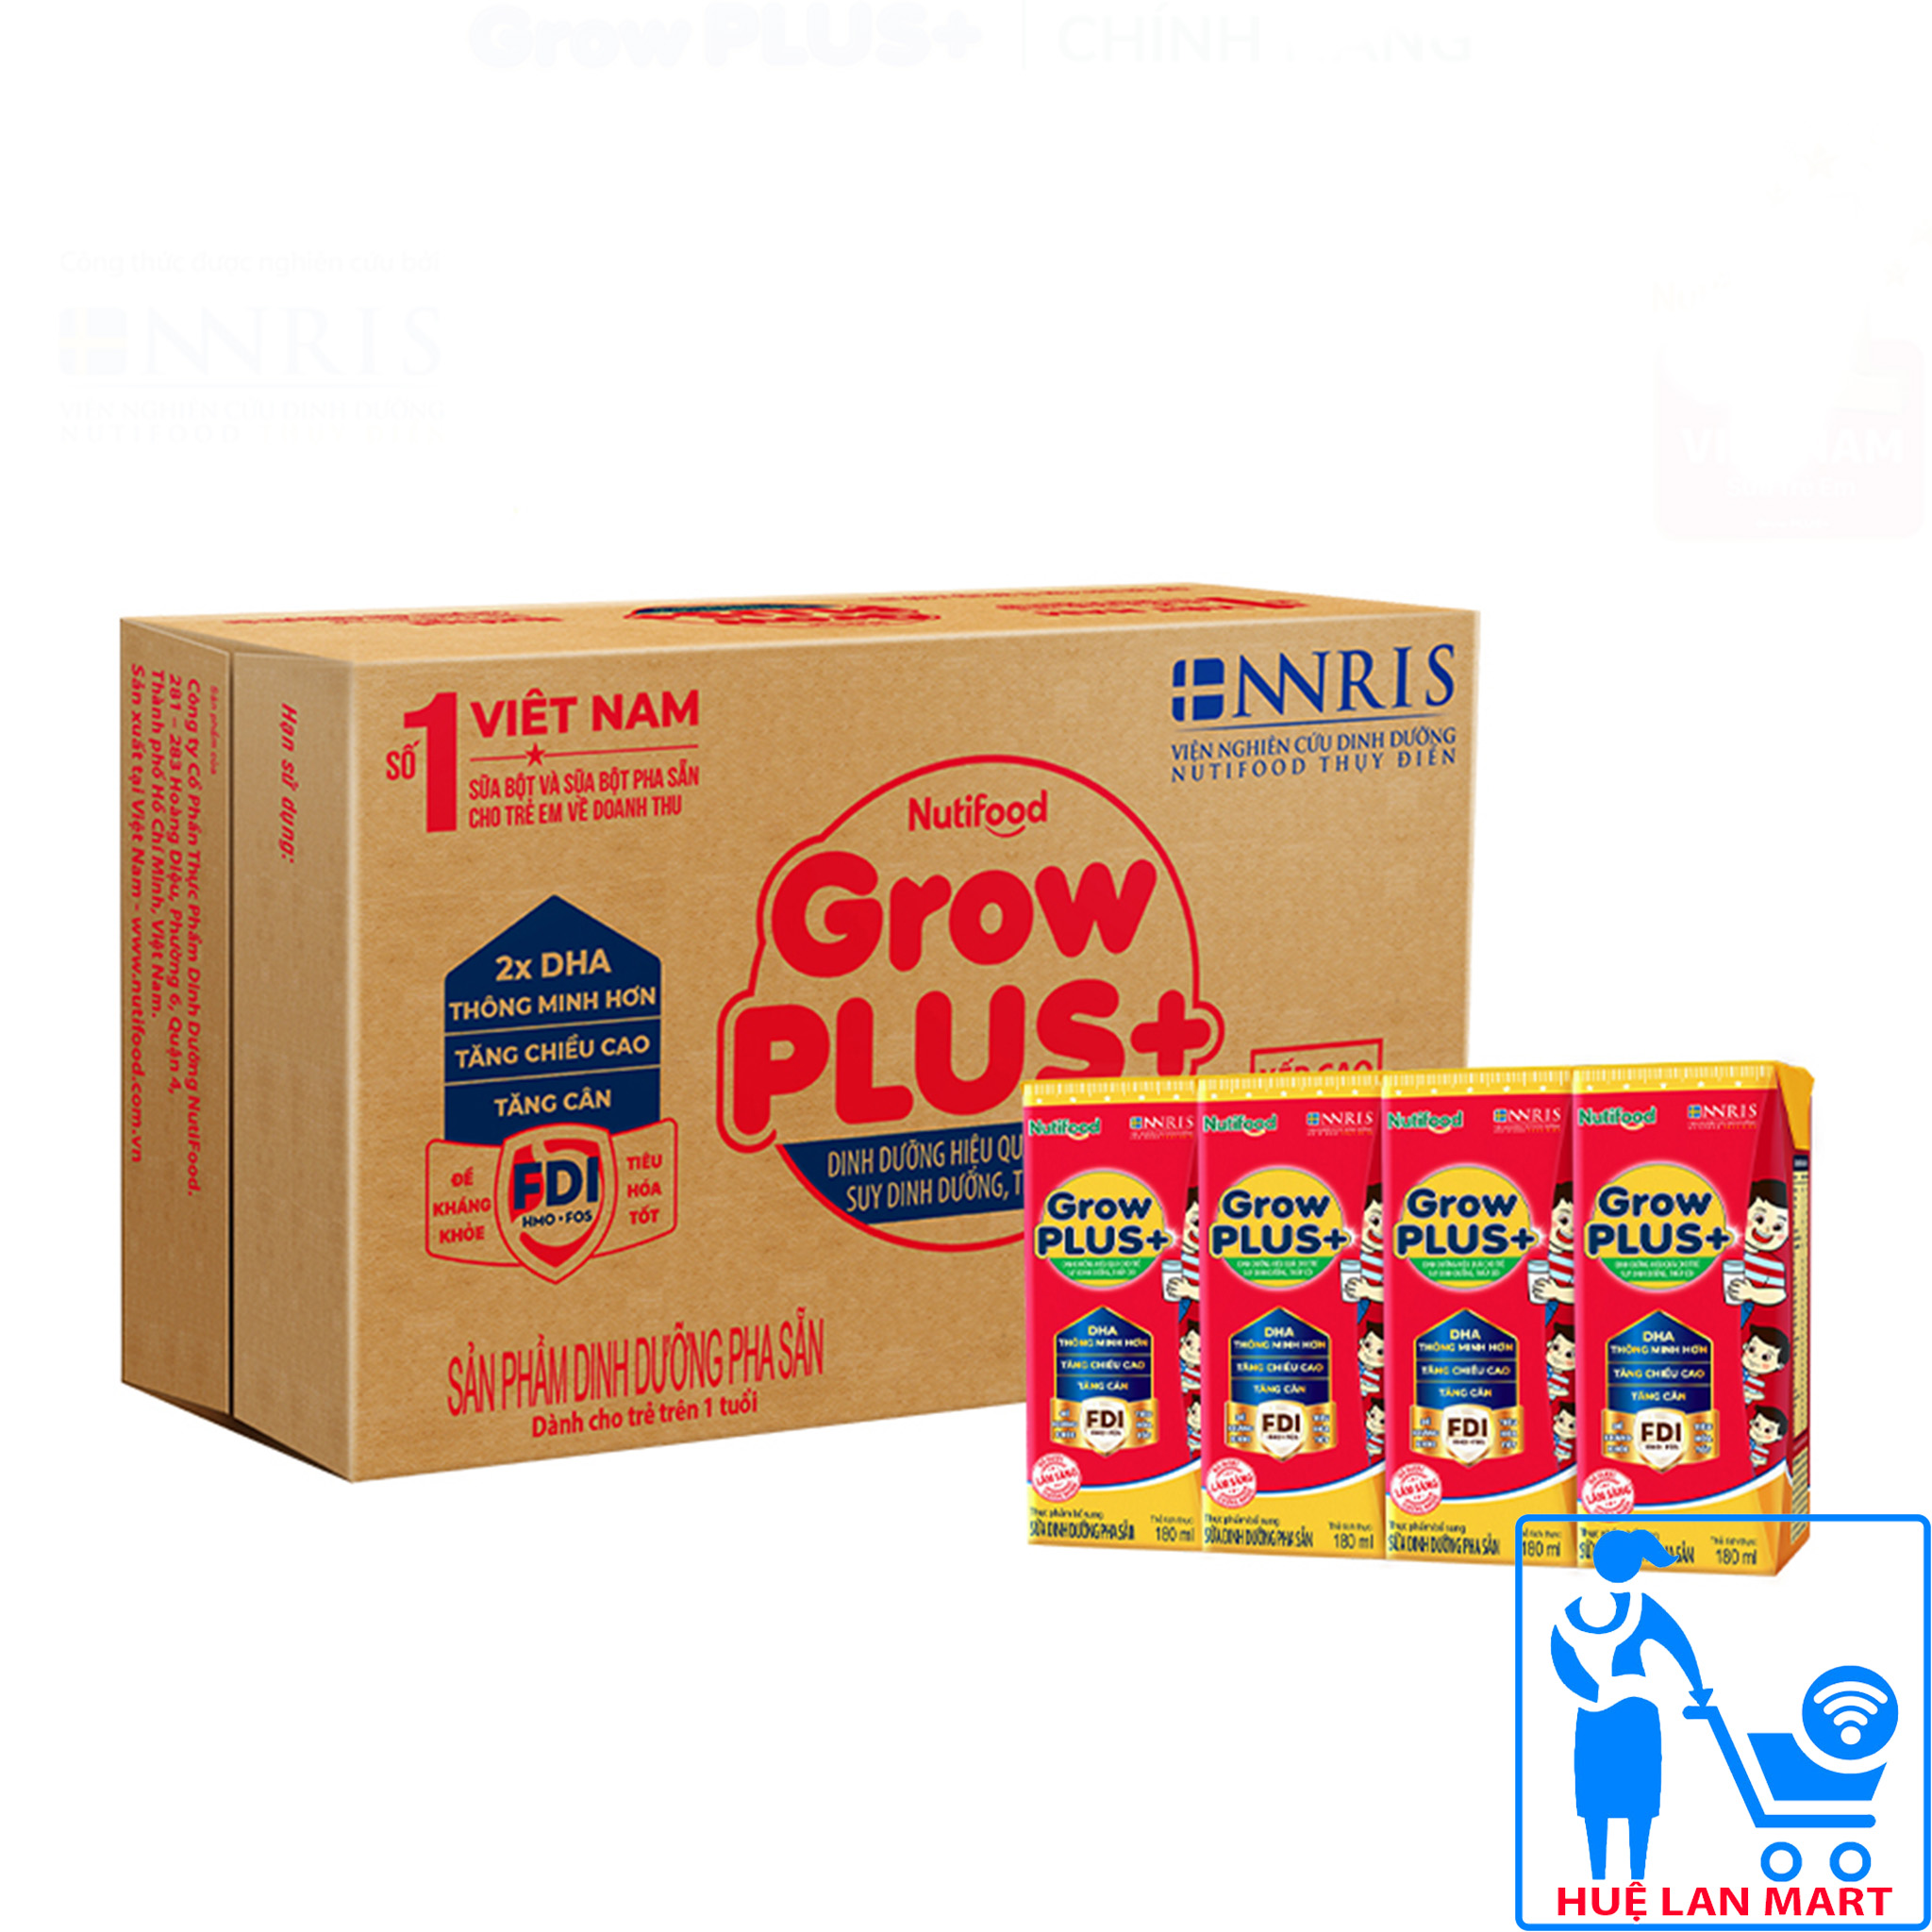 Sữa Bột Pha Sẵn Nutifood Grow Plus+ Đỏ Hương Vani Thùng 48 Hộp x 180ml (Dinh dưỡng hiệu quả cho trẻ suy dinh dưỡng, thấp còi từ 1~10 tuổi)